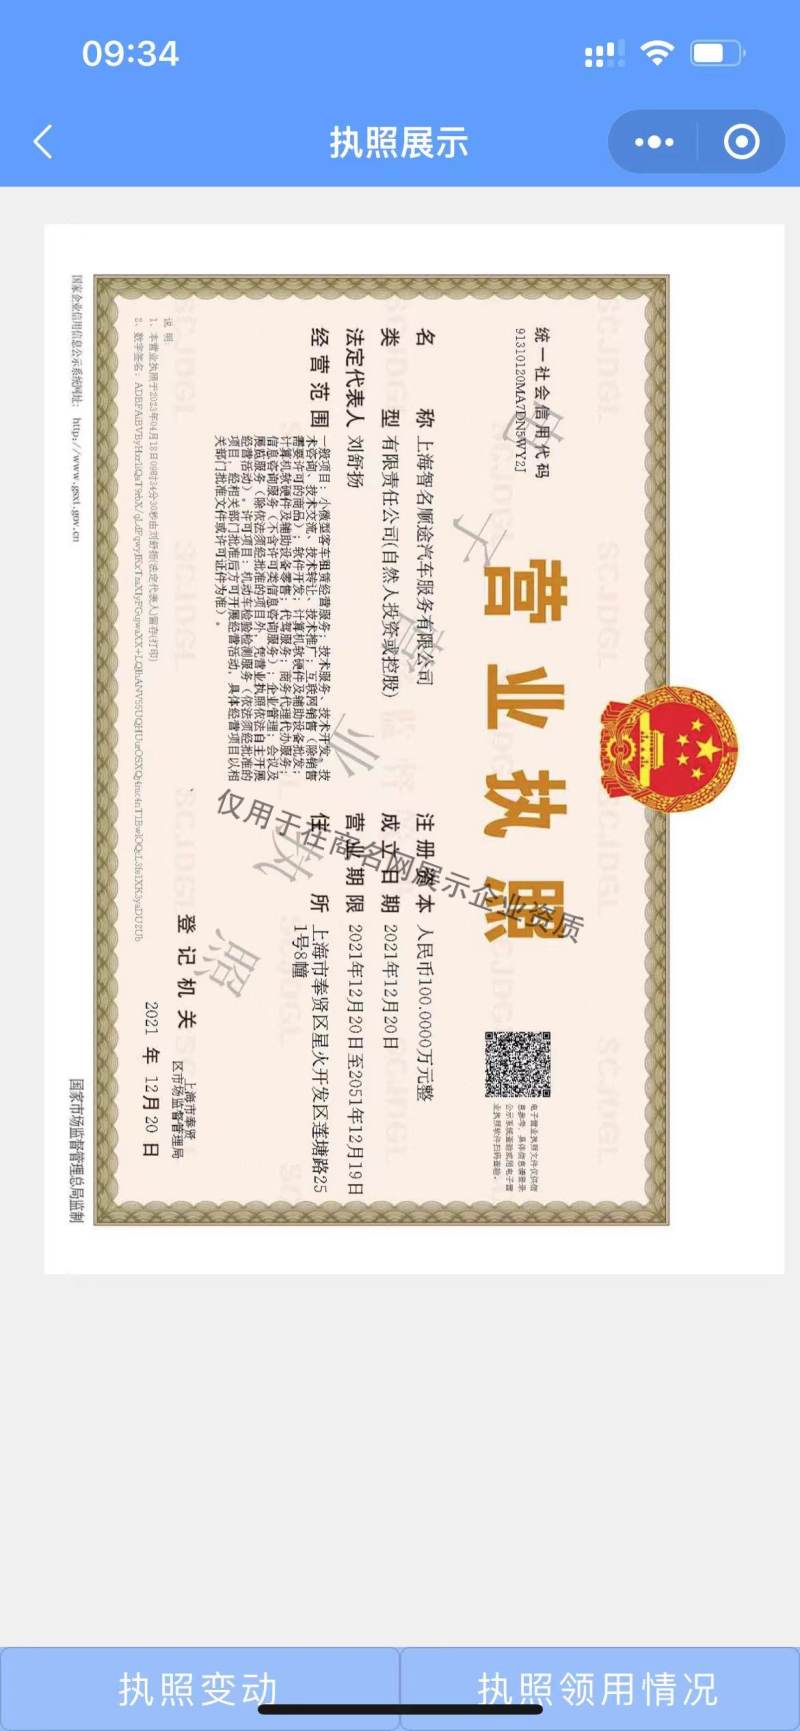 上海智名顺途汽车服务有限公司企业证书